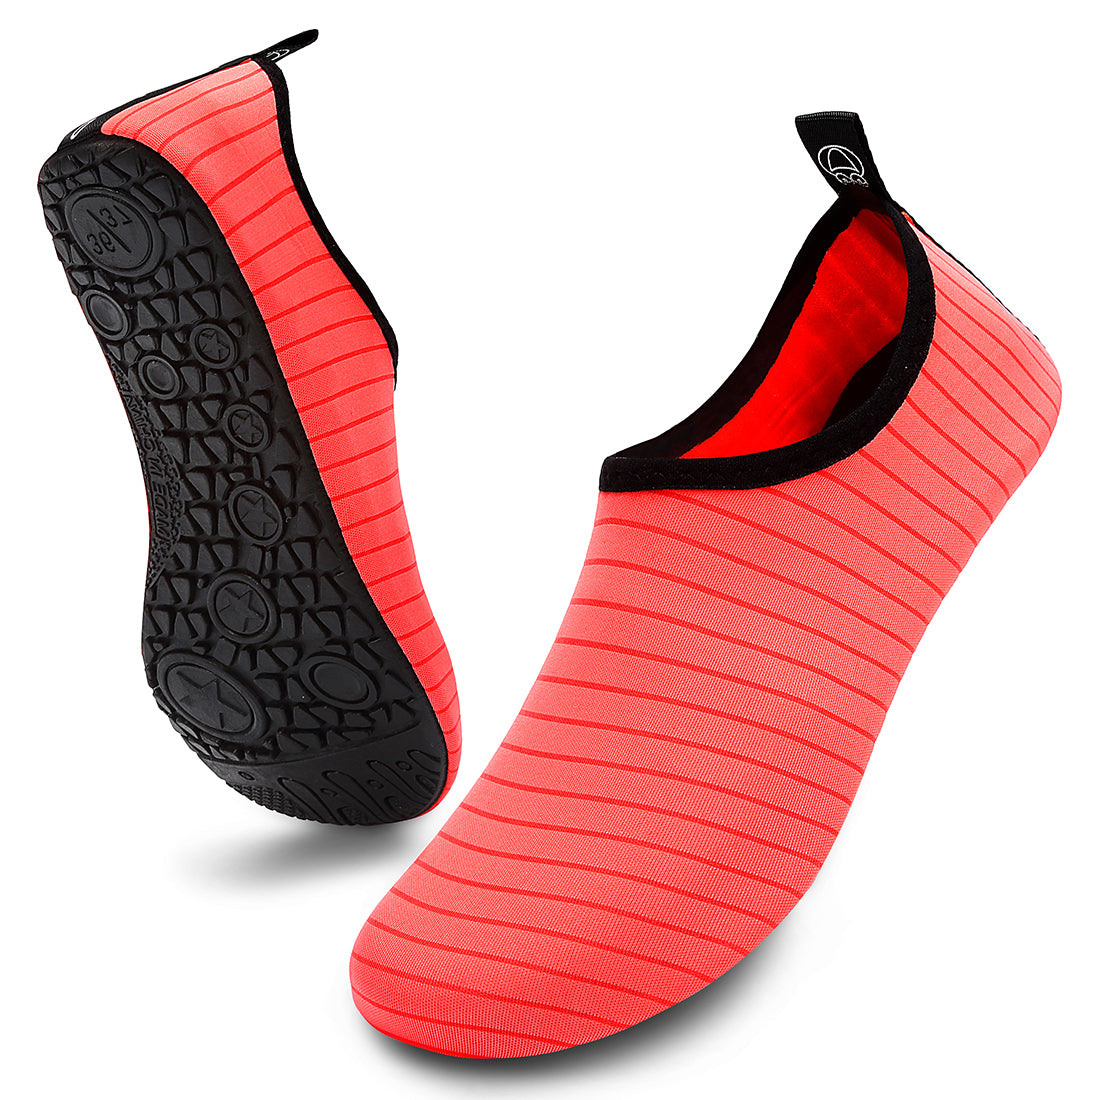 VIFUUR Water Sports Shoes for Men Women